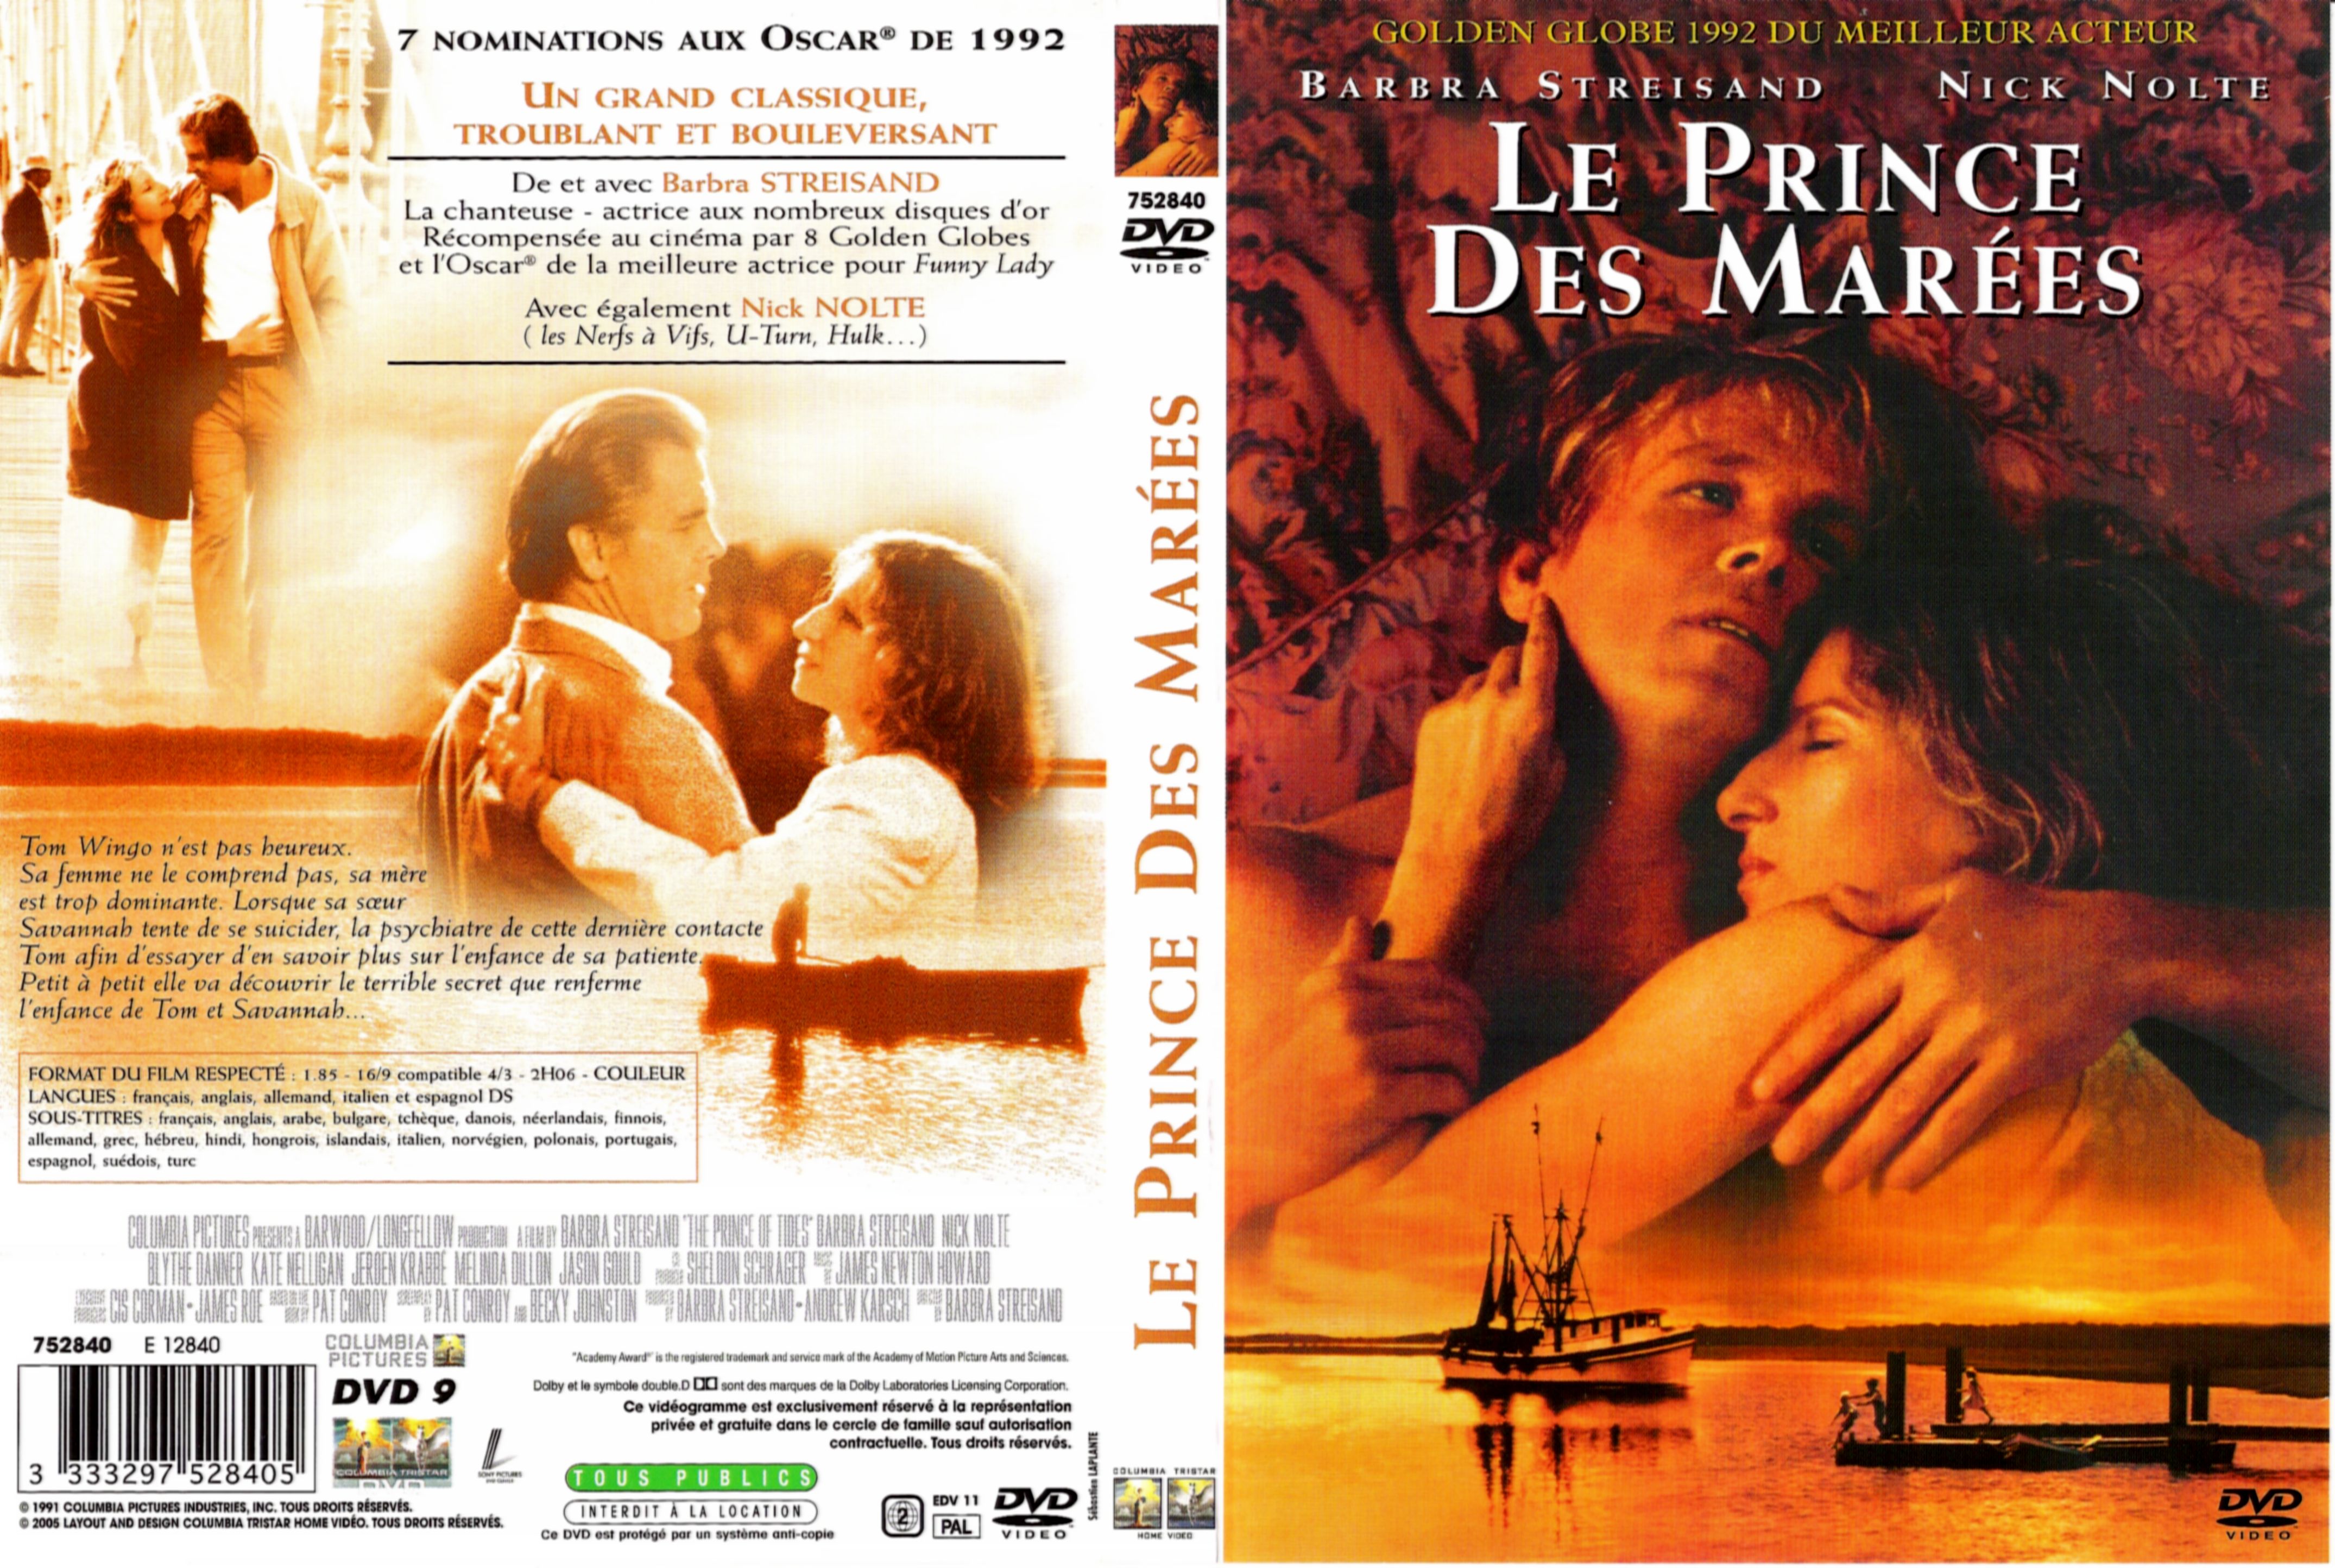 Jaquette DVD Le prince des mares v2